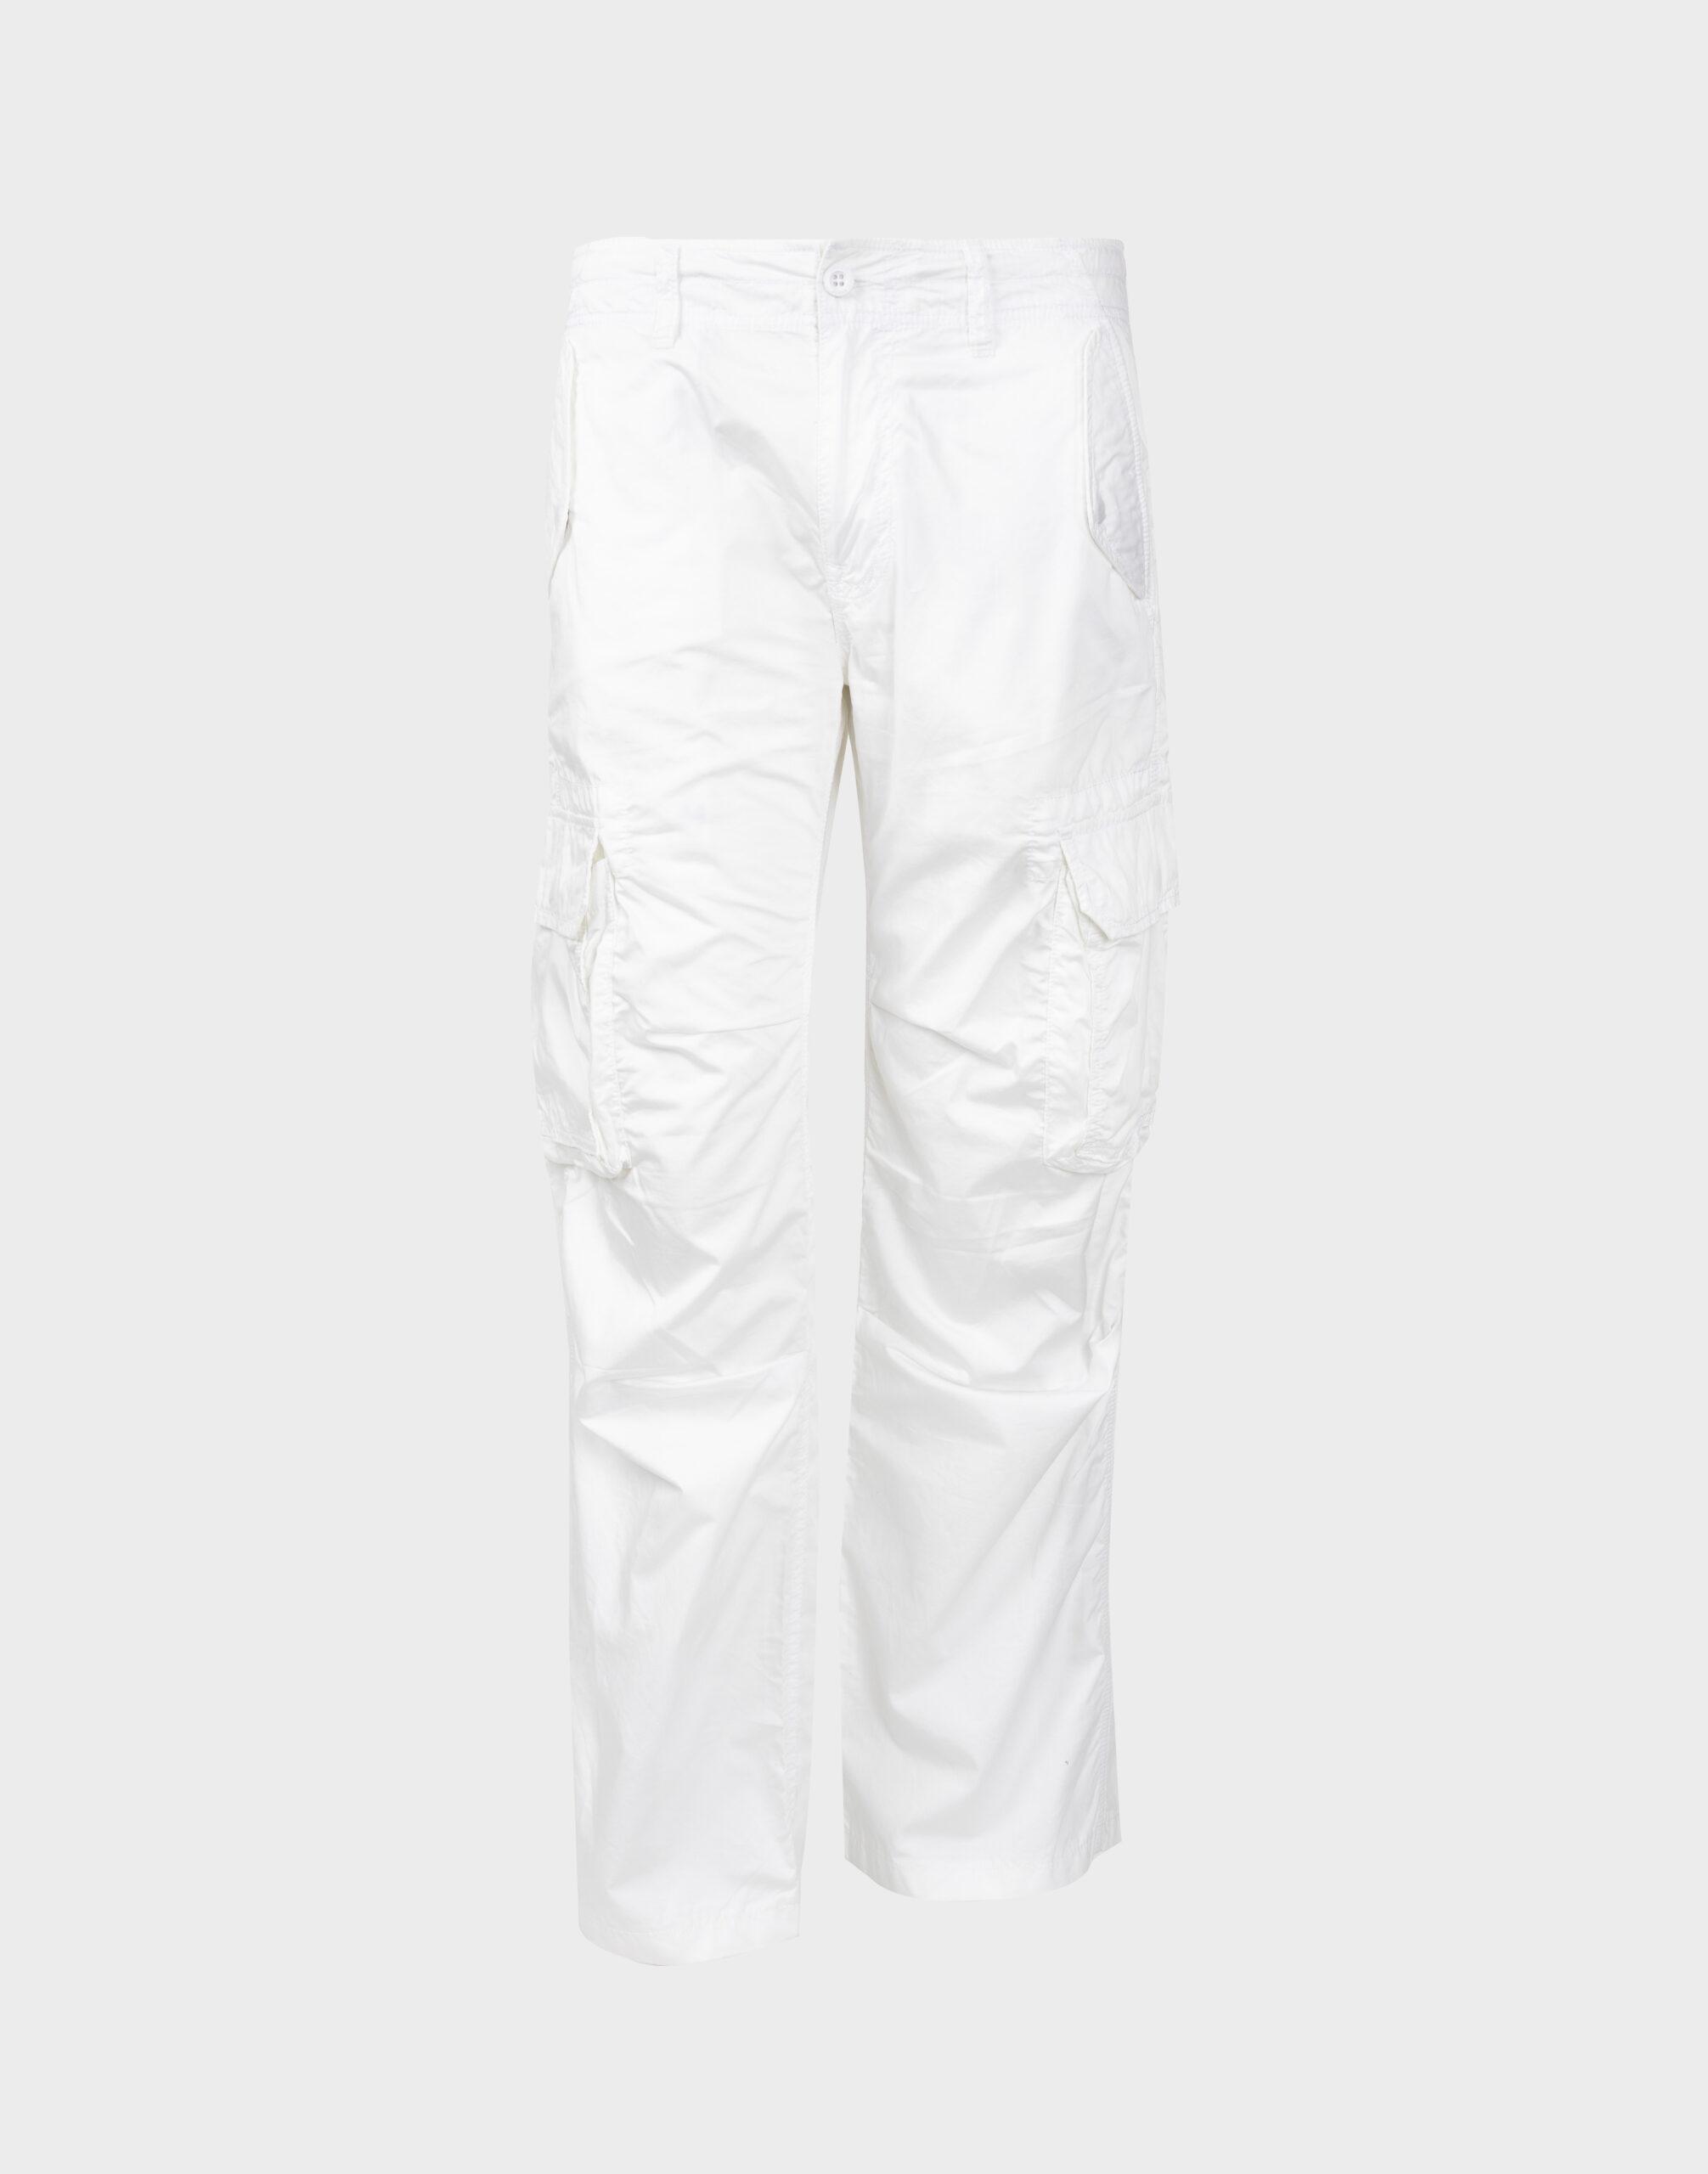 pantaloni bianchi da uomo modello cargo con tasconi sulle gambe